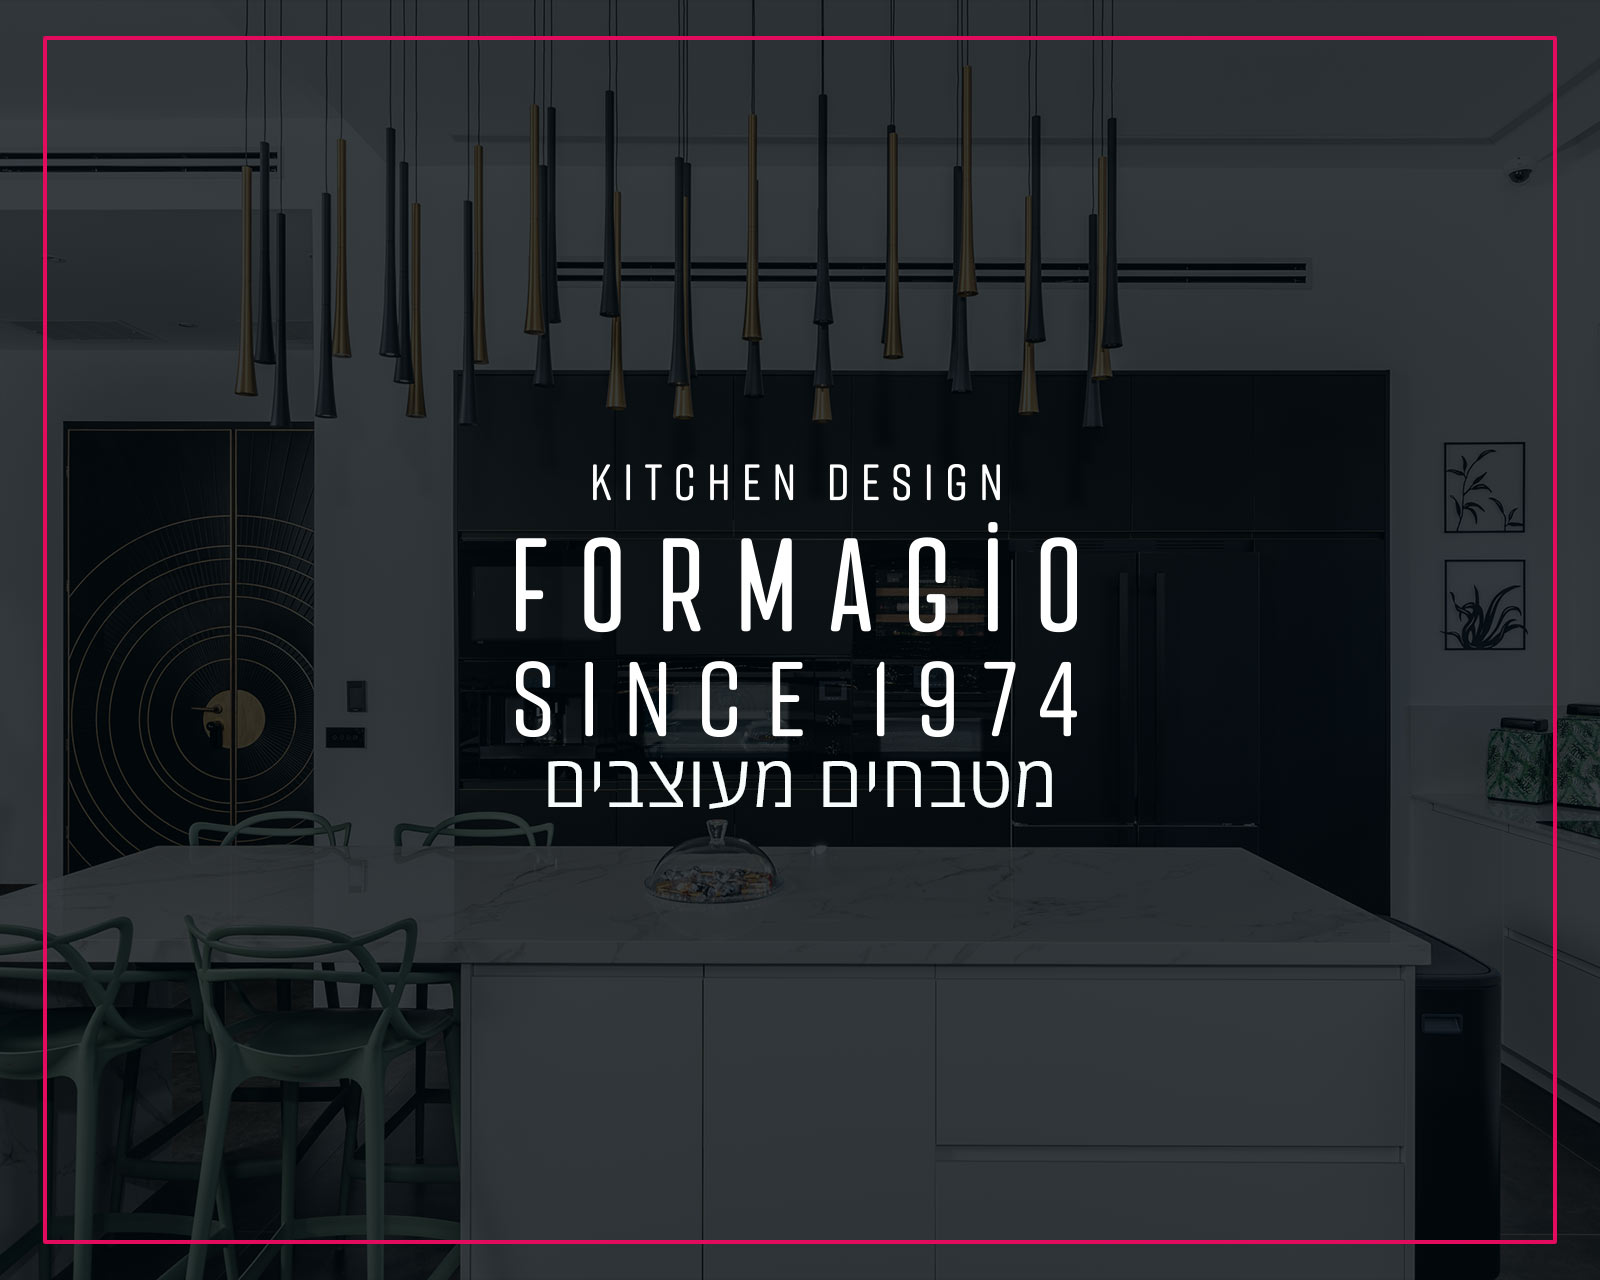 פרסום באינטרנט וקידום אורגני בגוגל לחברת פורמג'יו עיצוב מטבחי איכות - הקידום שלי